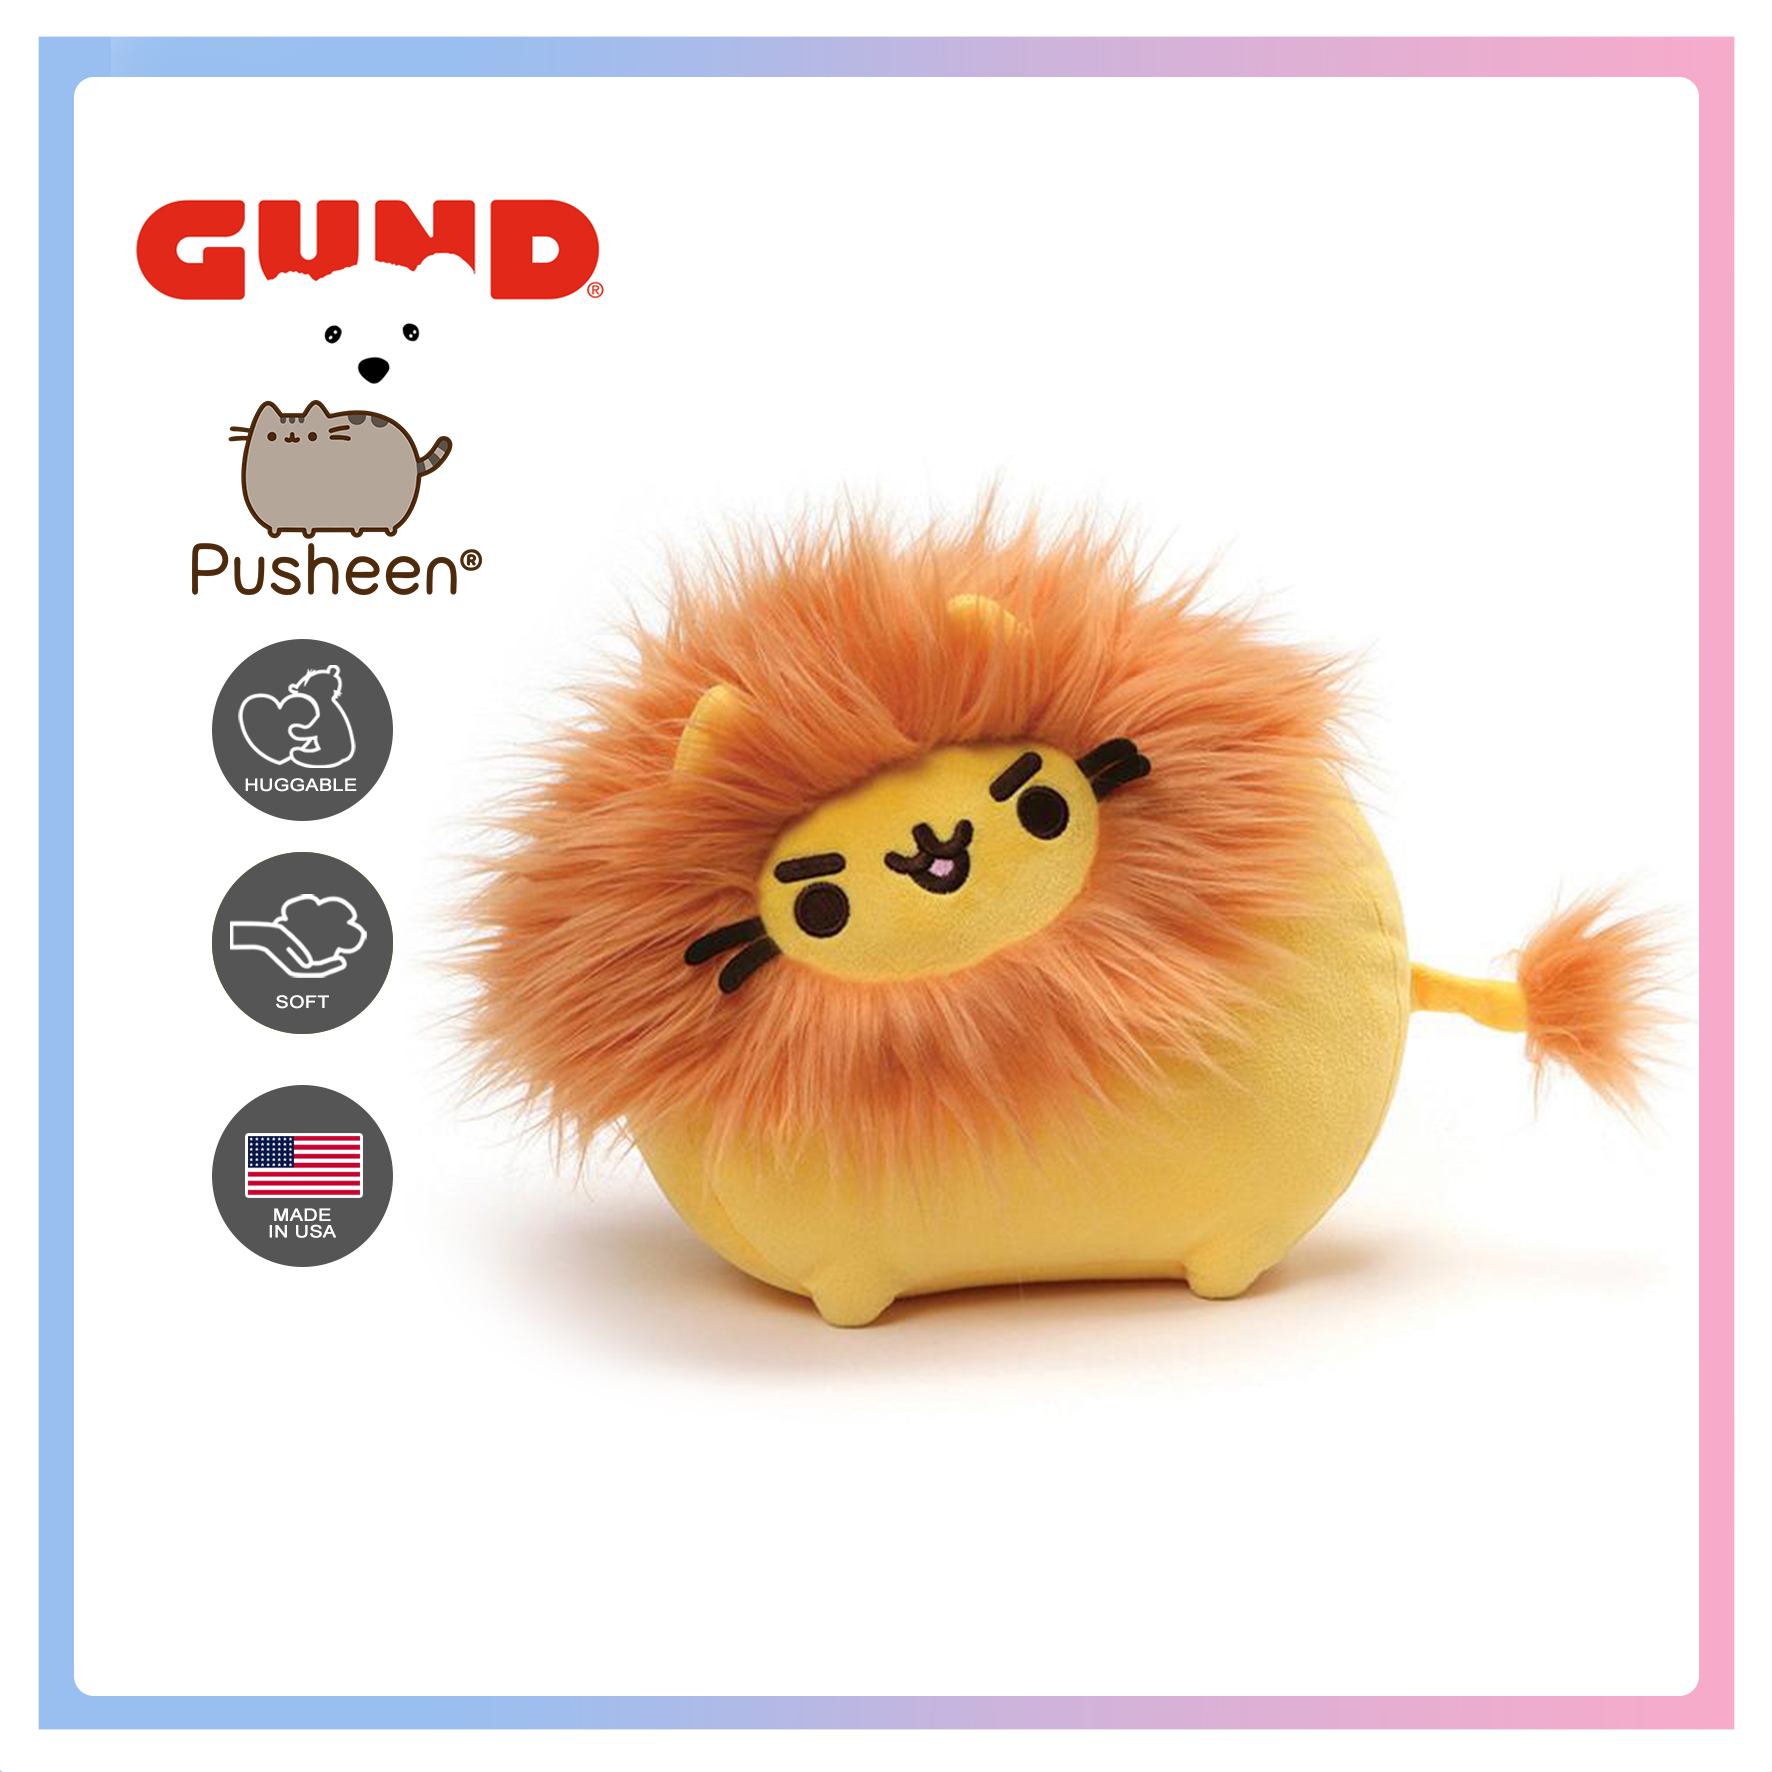 GUND Pusheen Pusheenimal Lion Plush Stuffed Animal Yellow and Orange 4061295 for sale online 